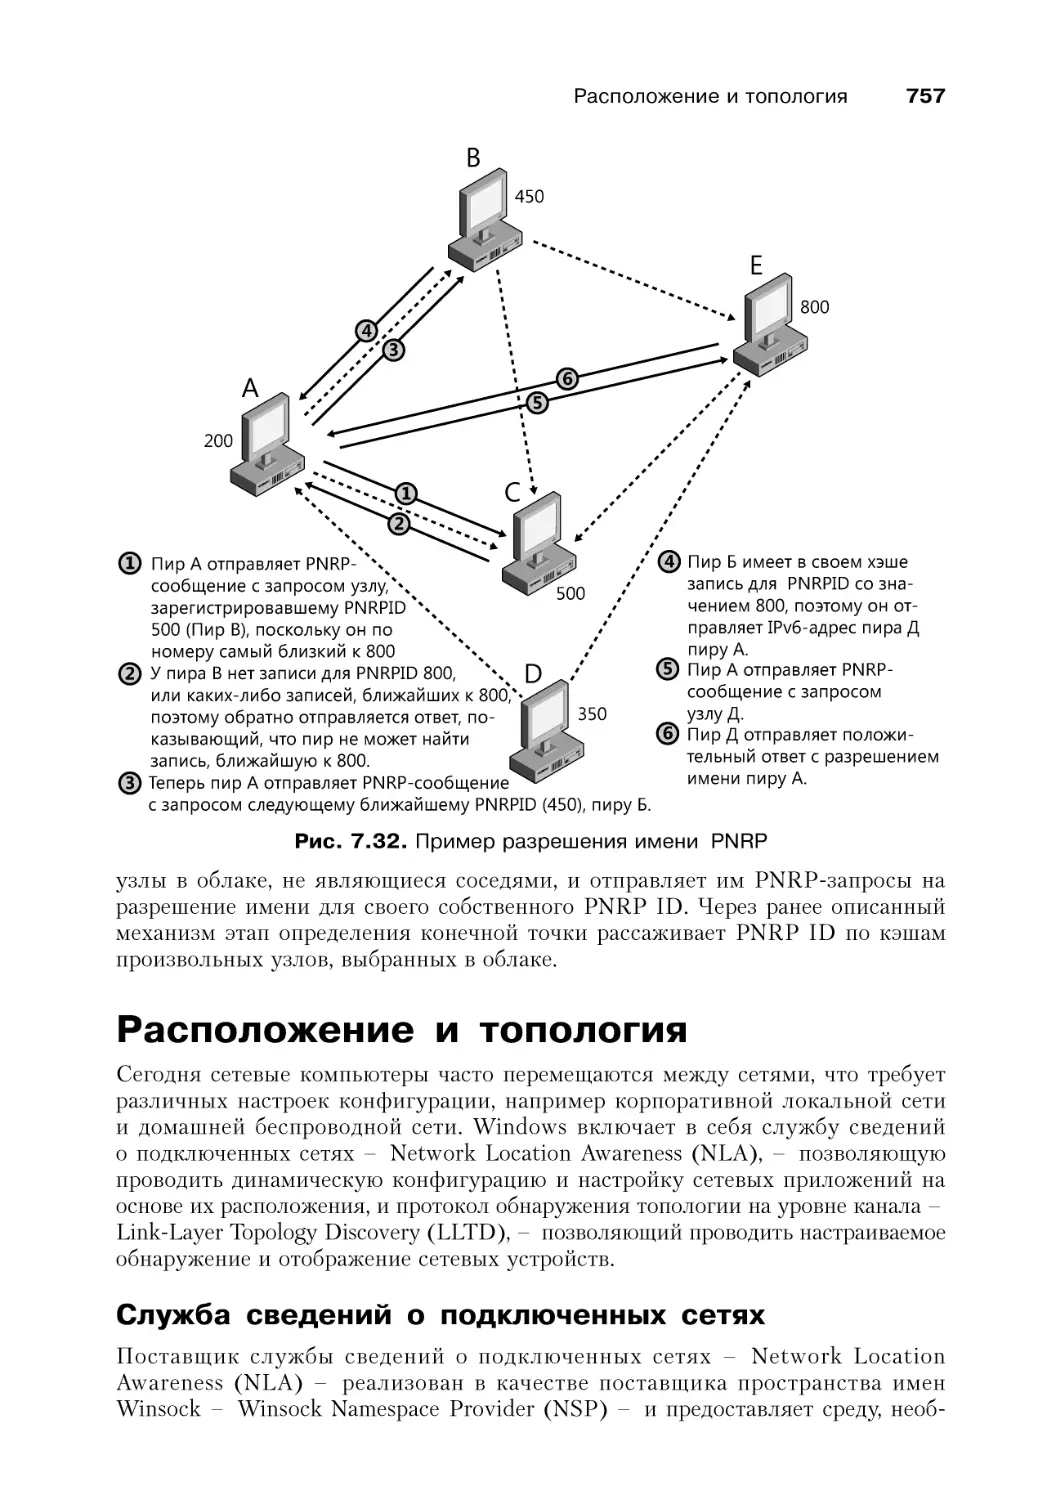 Расположение и топология
Служба сведений о подключенных сетях